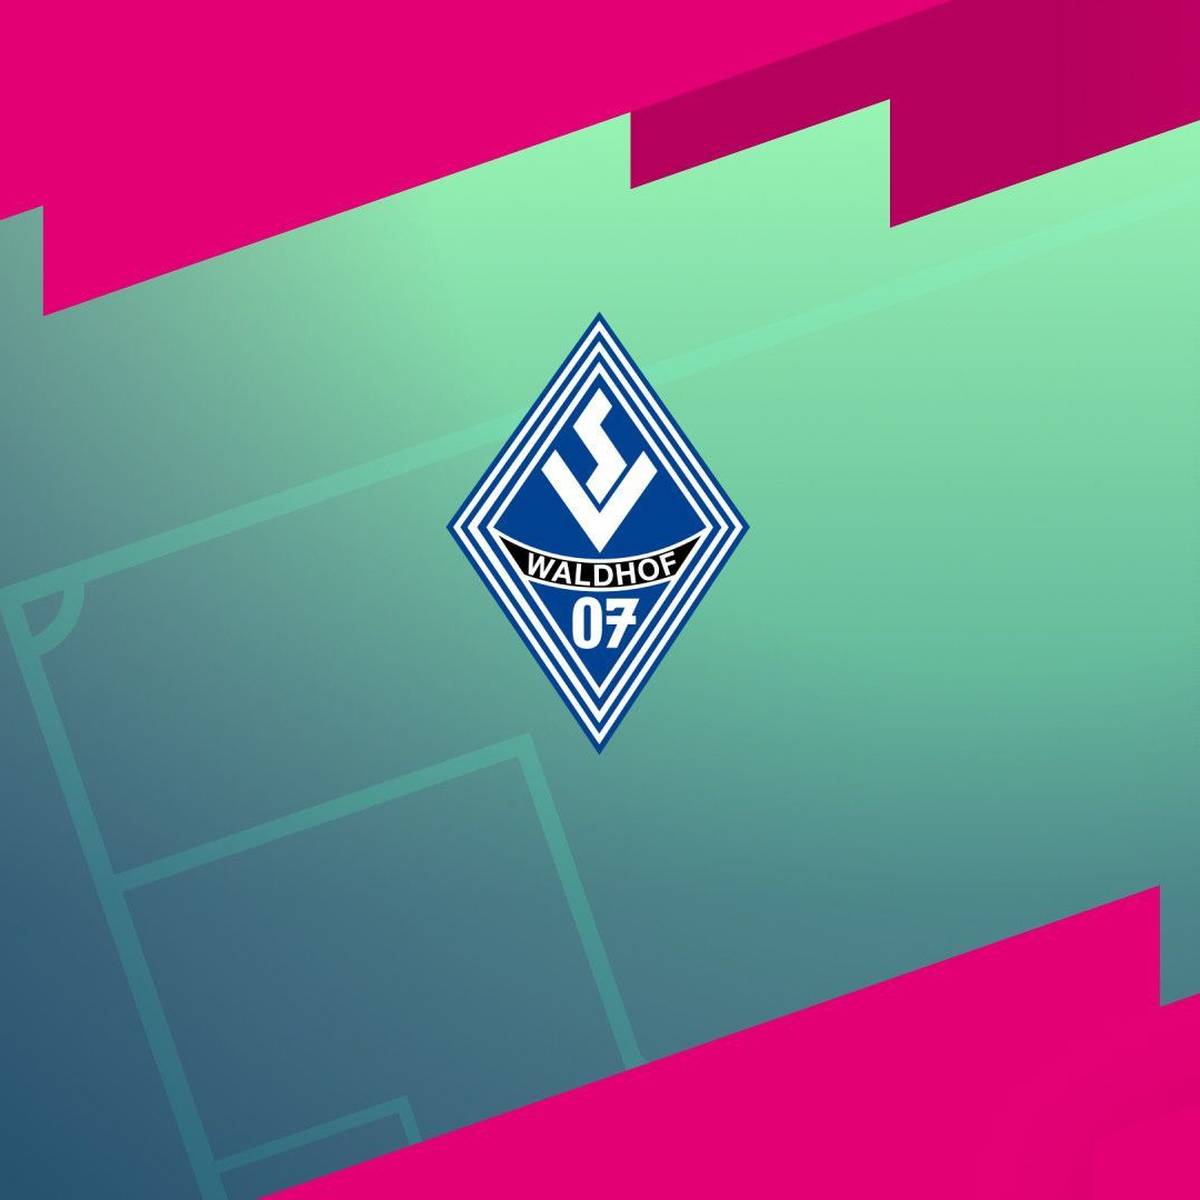 SV Waldhof Mannheim - TSV Havelse: Tore und Highlights | 3. Liga